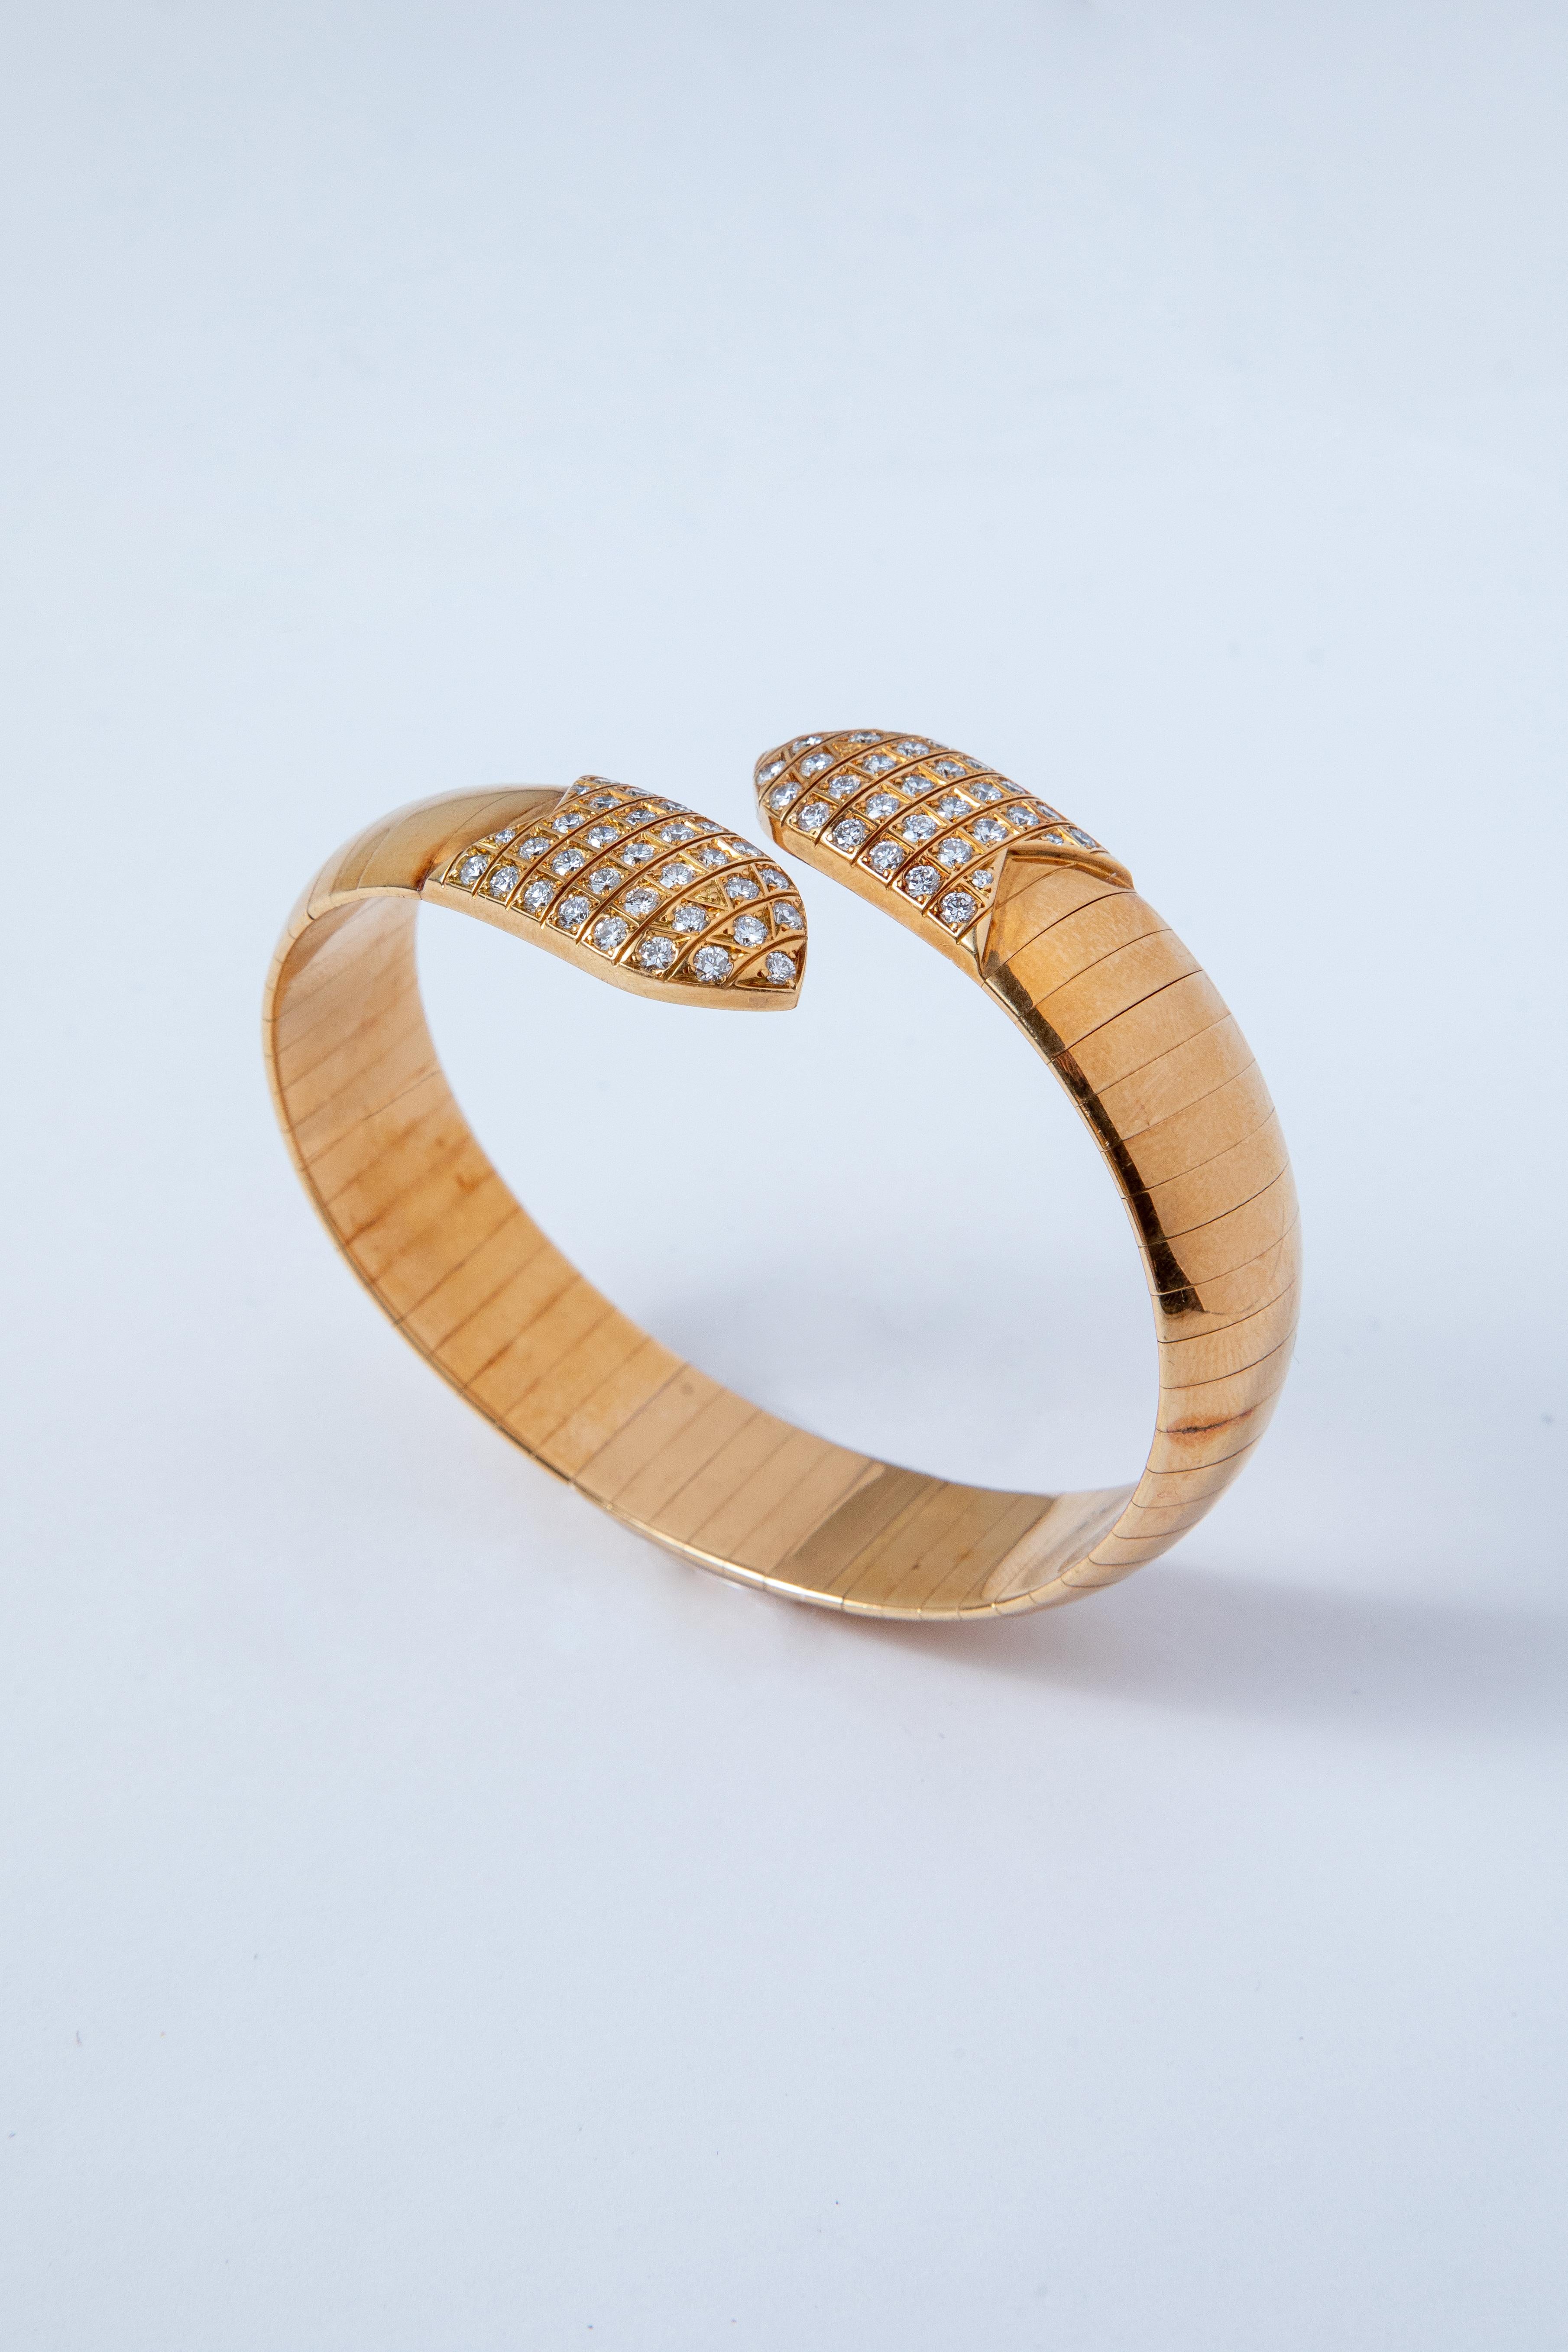 Bracelet et bague Chaumet en or jaune 18k sertis à chaque extrémité d'une grille de diamants taillés en brillant.

Signé Chaumet Paris et numéroté

Tour de poignet : 17.5 cm
Taille de l'anneau : 5 